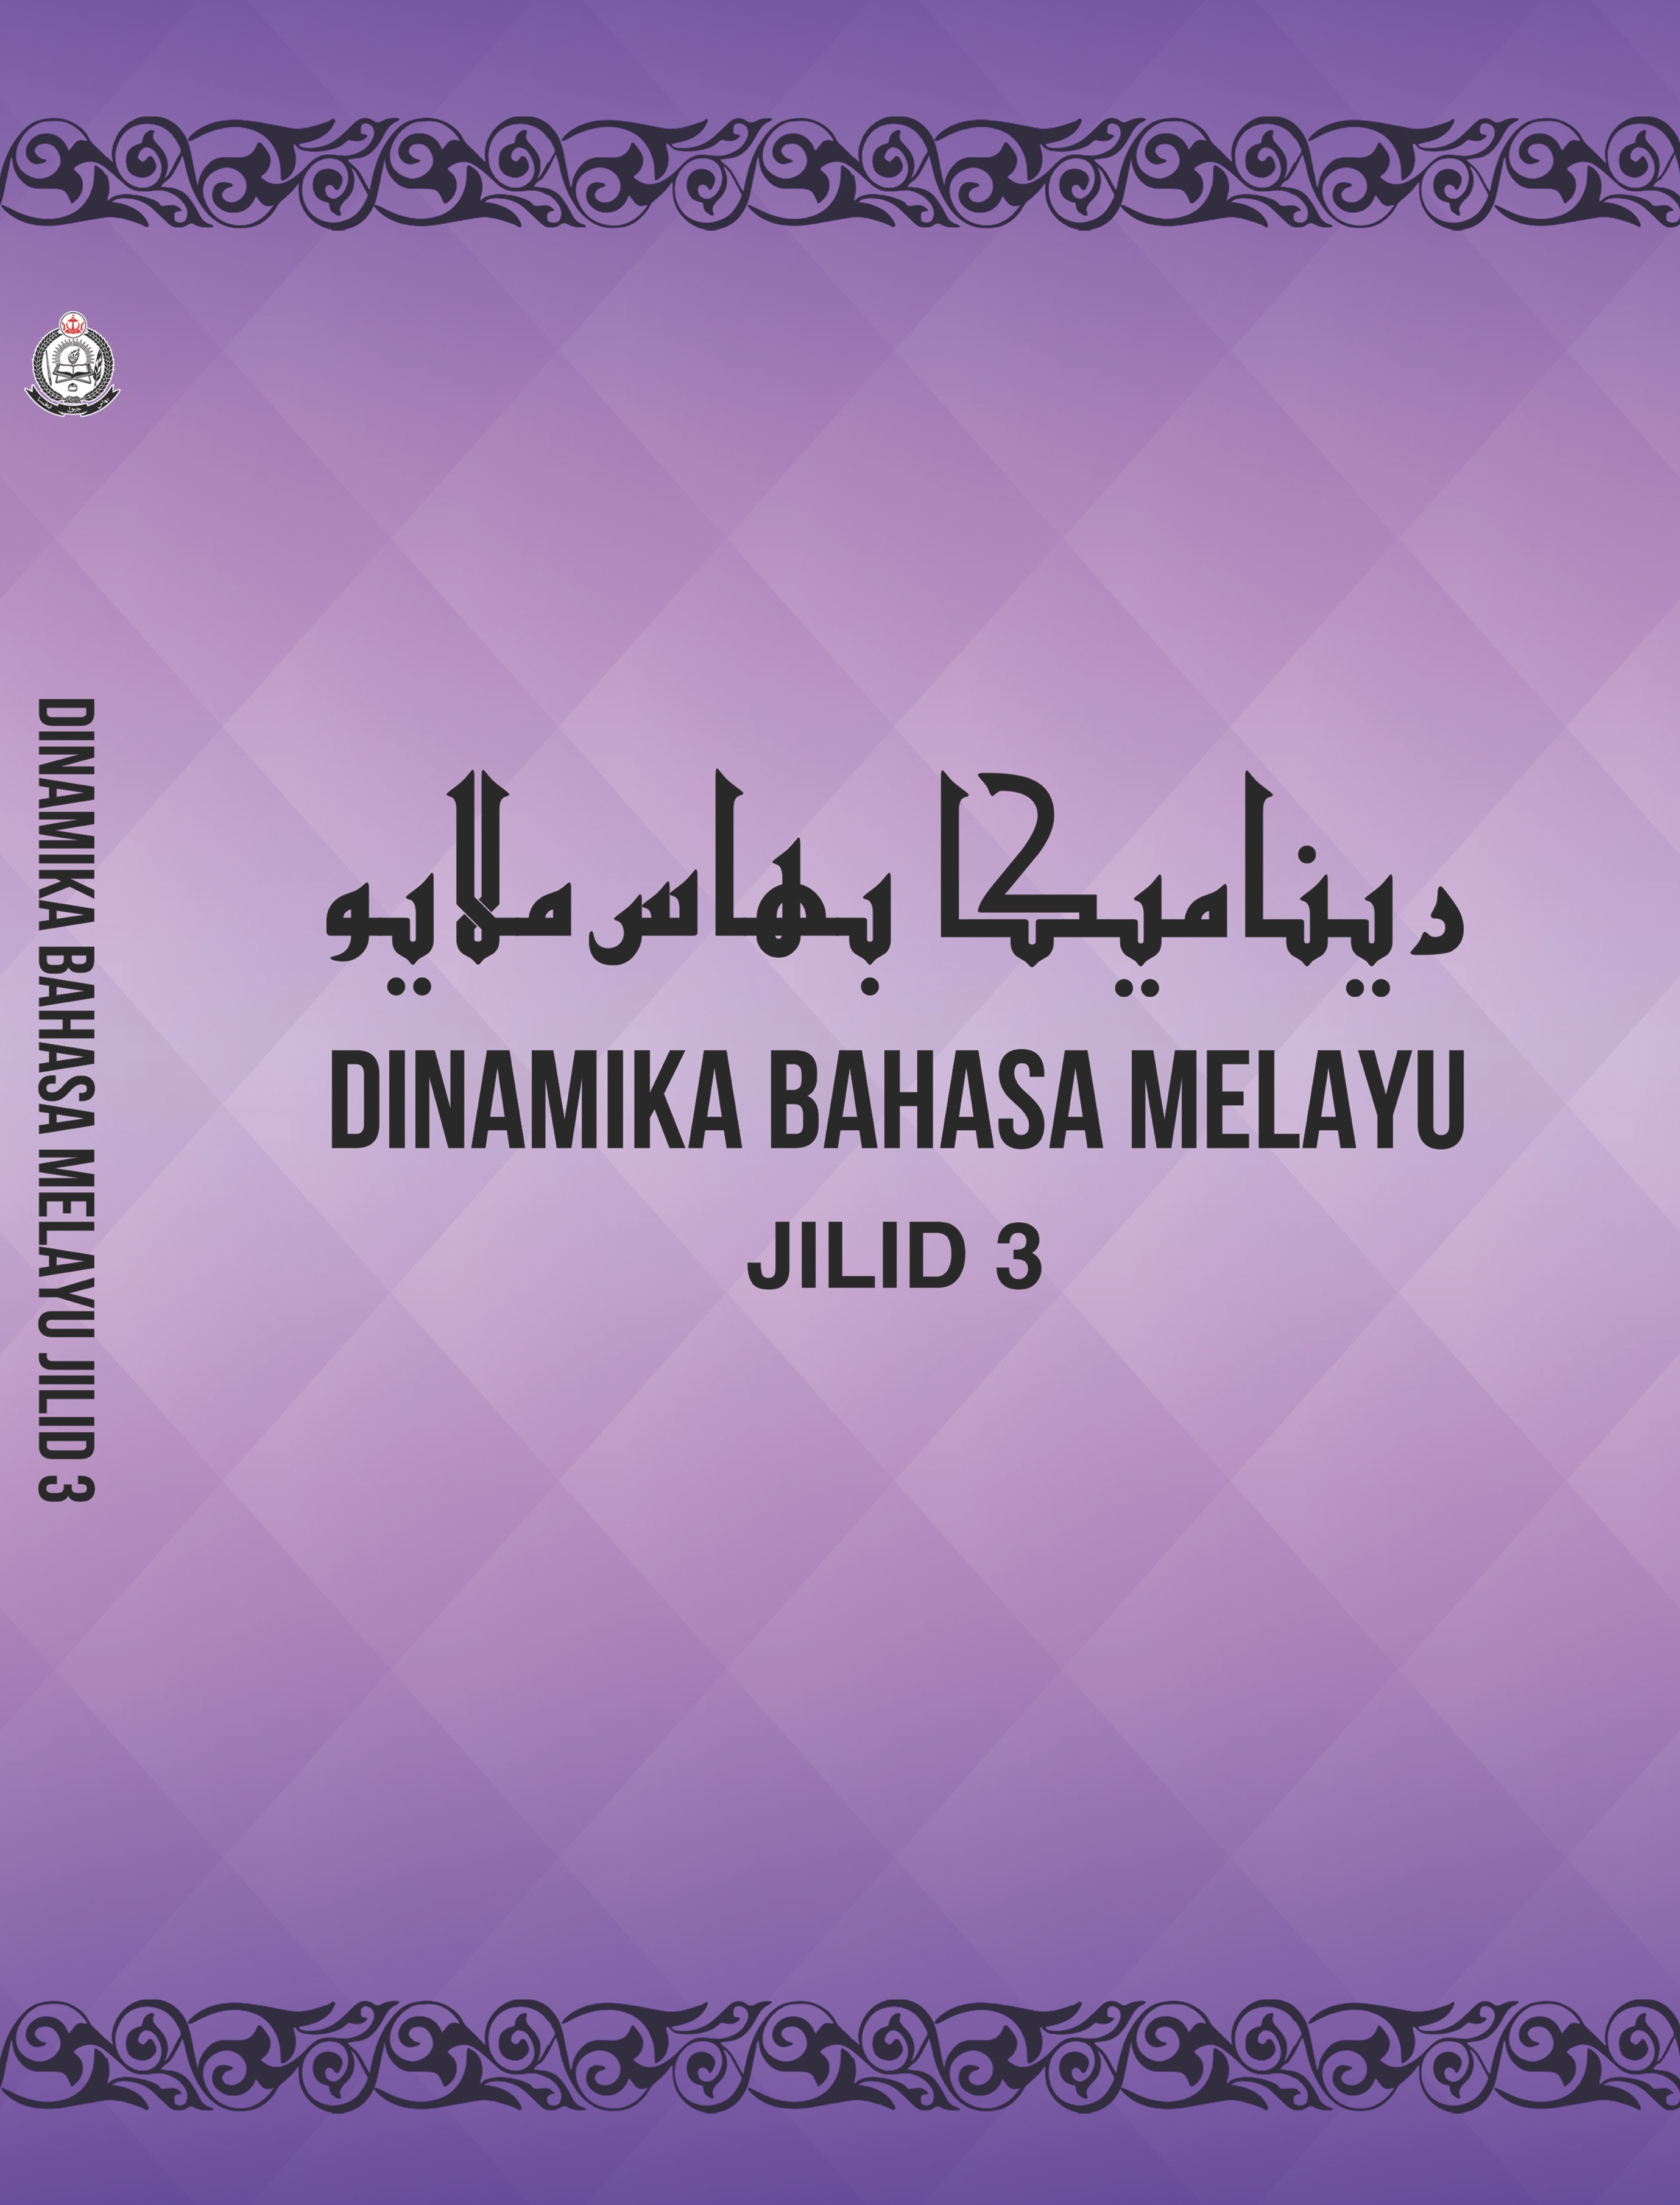 Dinamika Bahasa Melayu Jilid 3.jpg